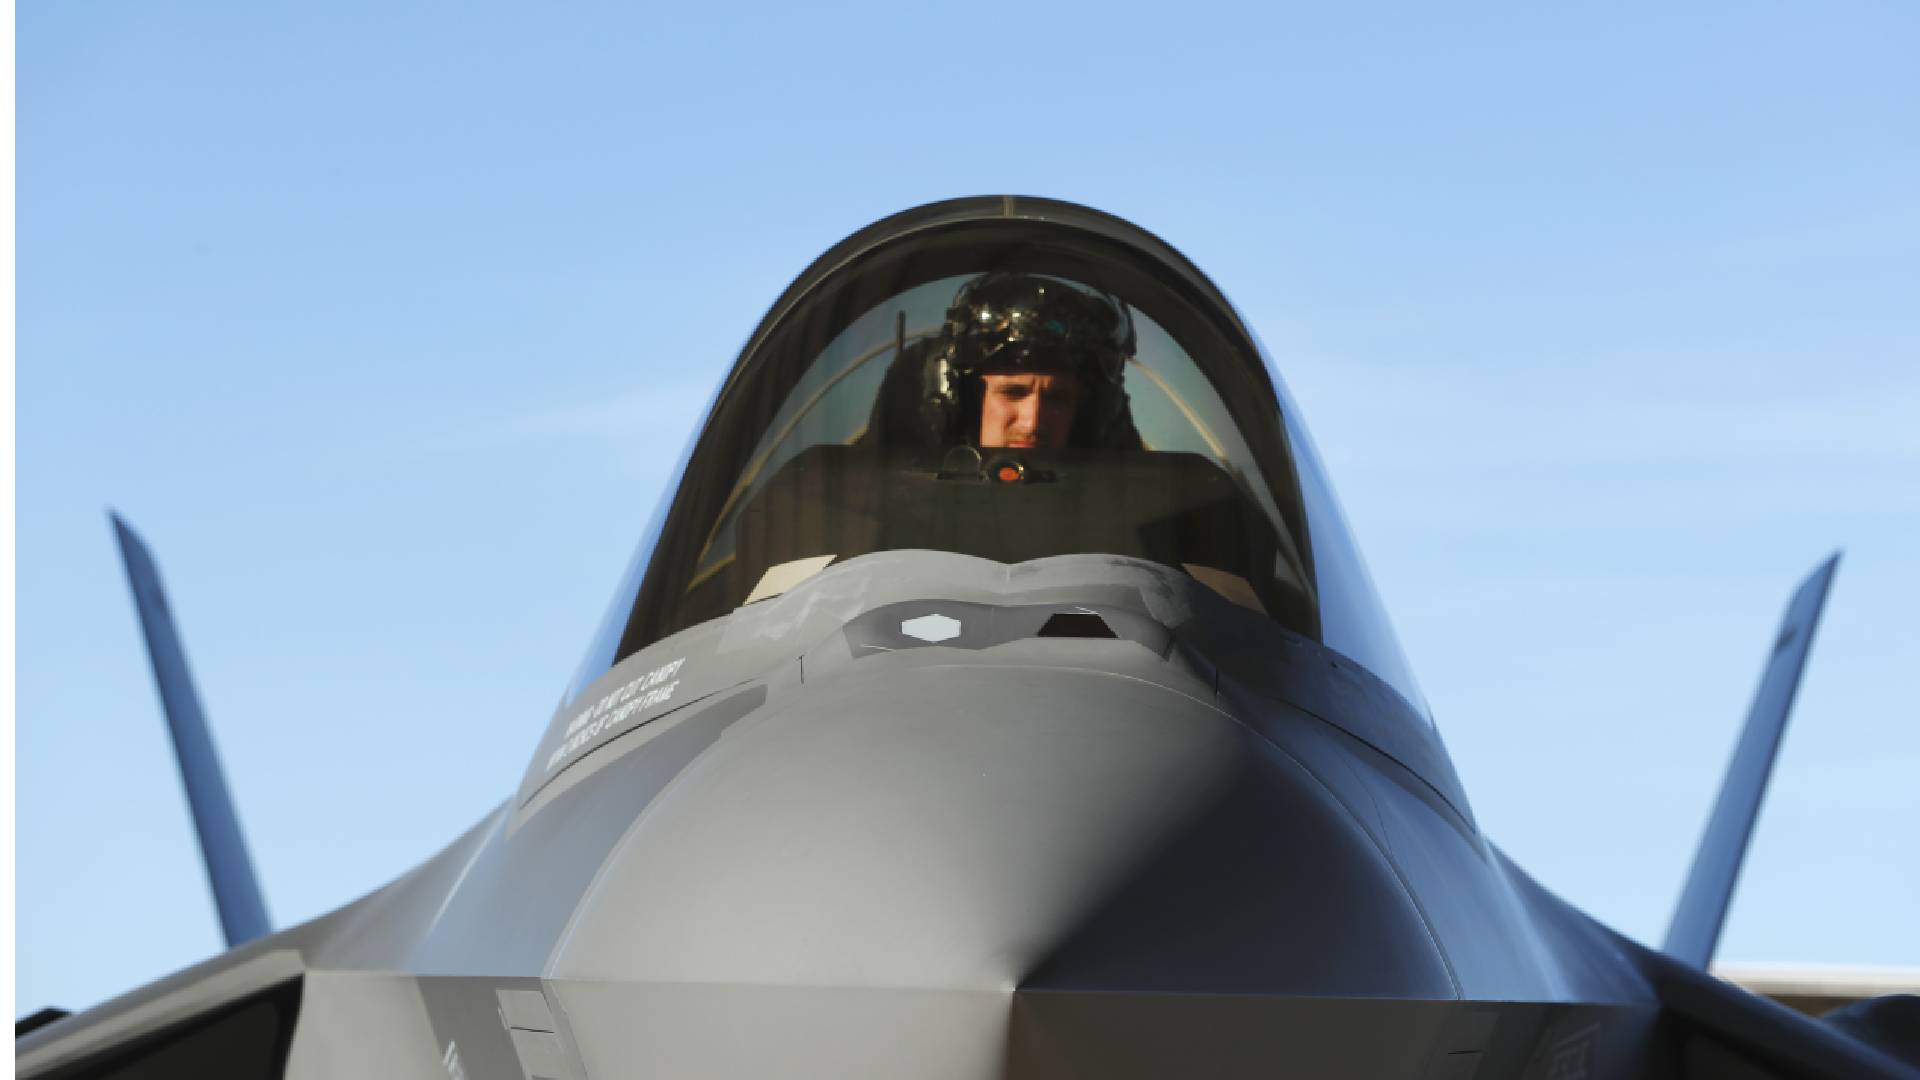 Letouny F-35 budou brzy obsluhovat čeští piloti